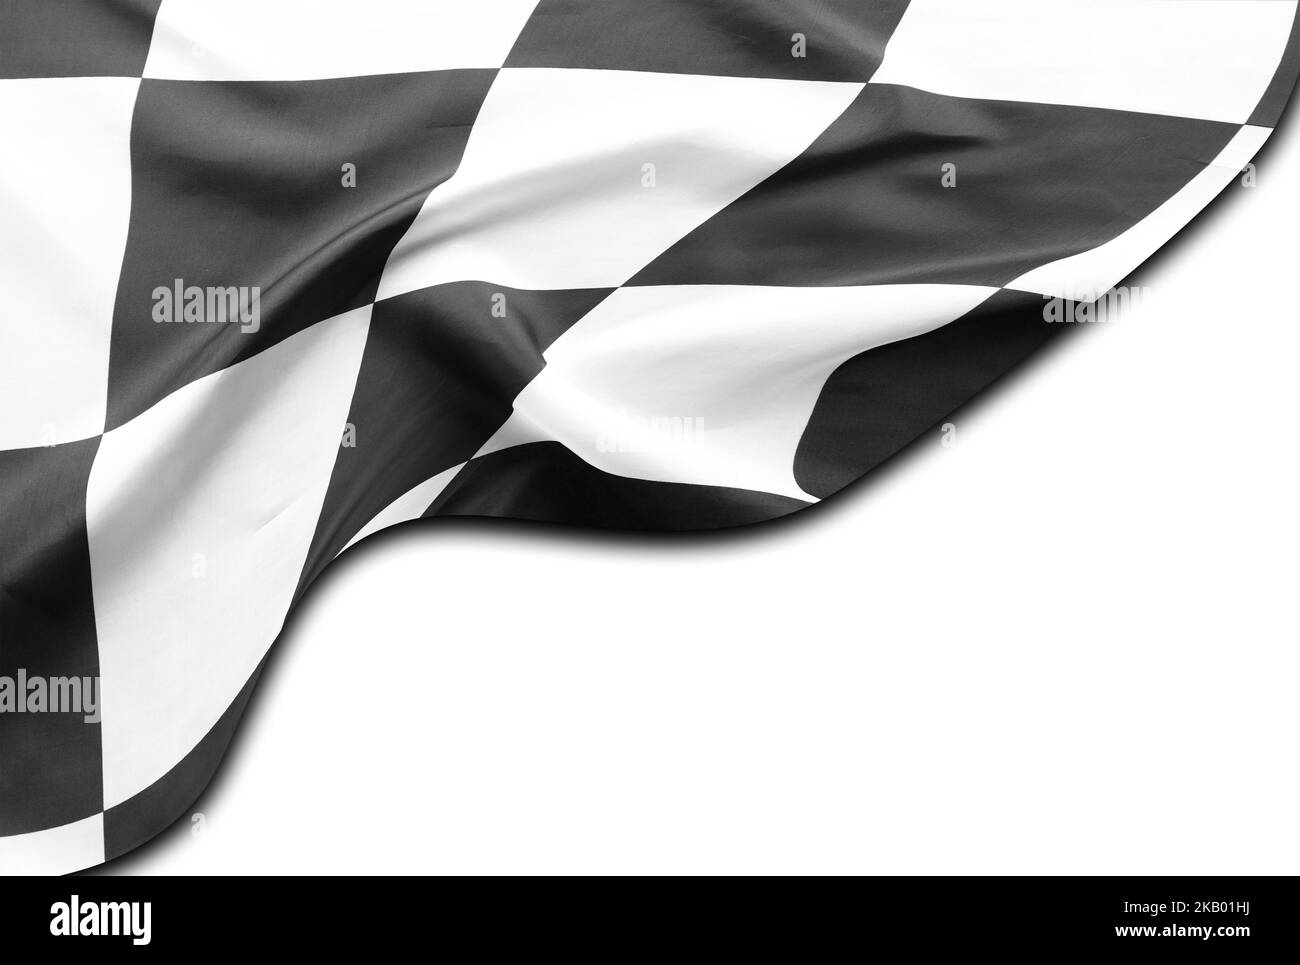 Bandera de competición a cuadros en blanco y negro sobre fondo blanco Foto de stock